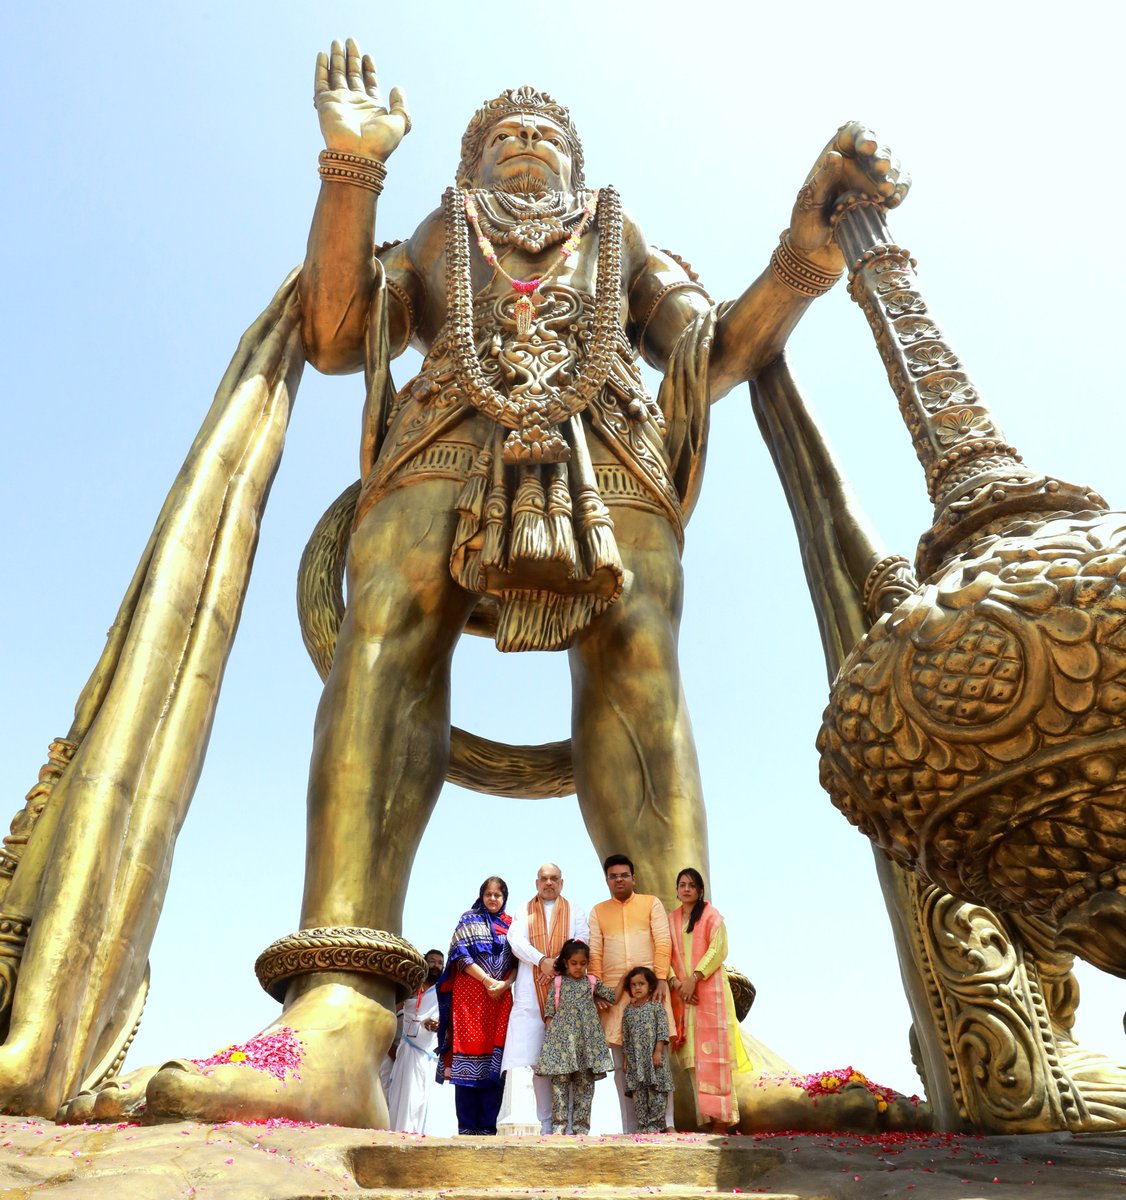 हनुमान जन्मोत्सव के पावन पर्व पर गुजरात के सालंगपुर में श्री कष्टभंजन देव मंदिर के समीप हनुमान जी की 54 फीट ऊँची प्रतिमा का अनावरण किया।

पंचधातु से निर्मित यह भव्य प्रतिमा भारतीय शिल्पकला का अद्भुत उदाहरण है, जो यहाँ आने वाले श्रद्धालुओं के लिए श्रद्धा व दर्शन का केन्द्र बनेगी।